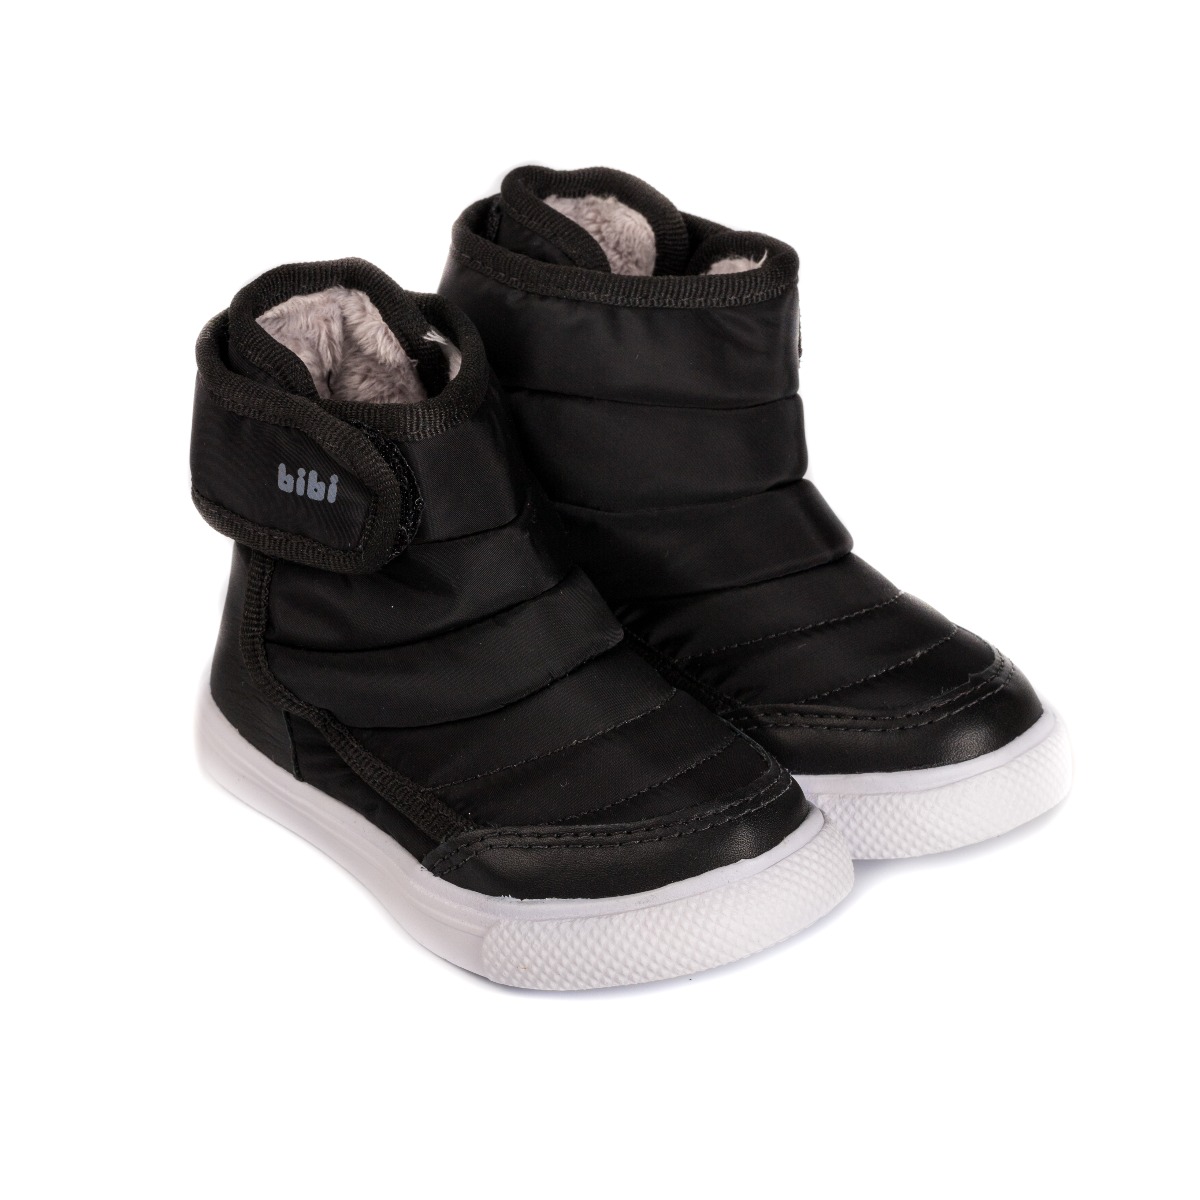 Ghete imblanite, cu velcro, unisex Bibi Agility Mini Black Bibi Shoes imagine 2022